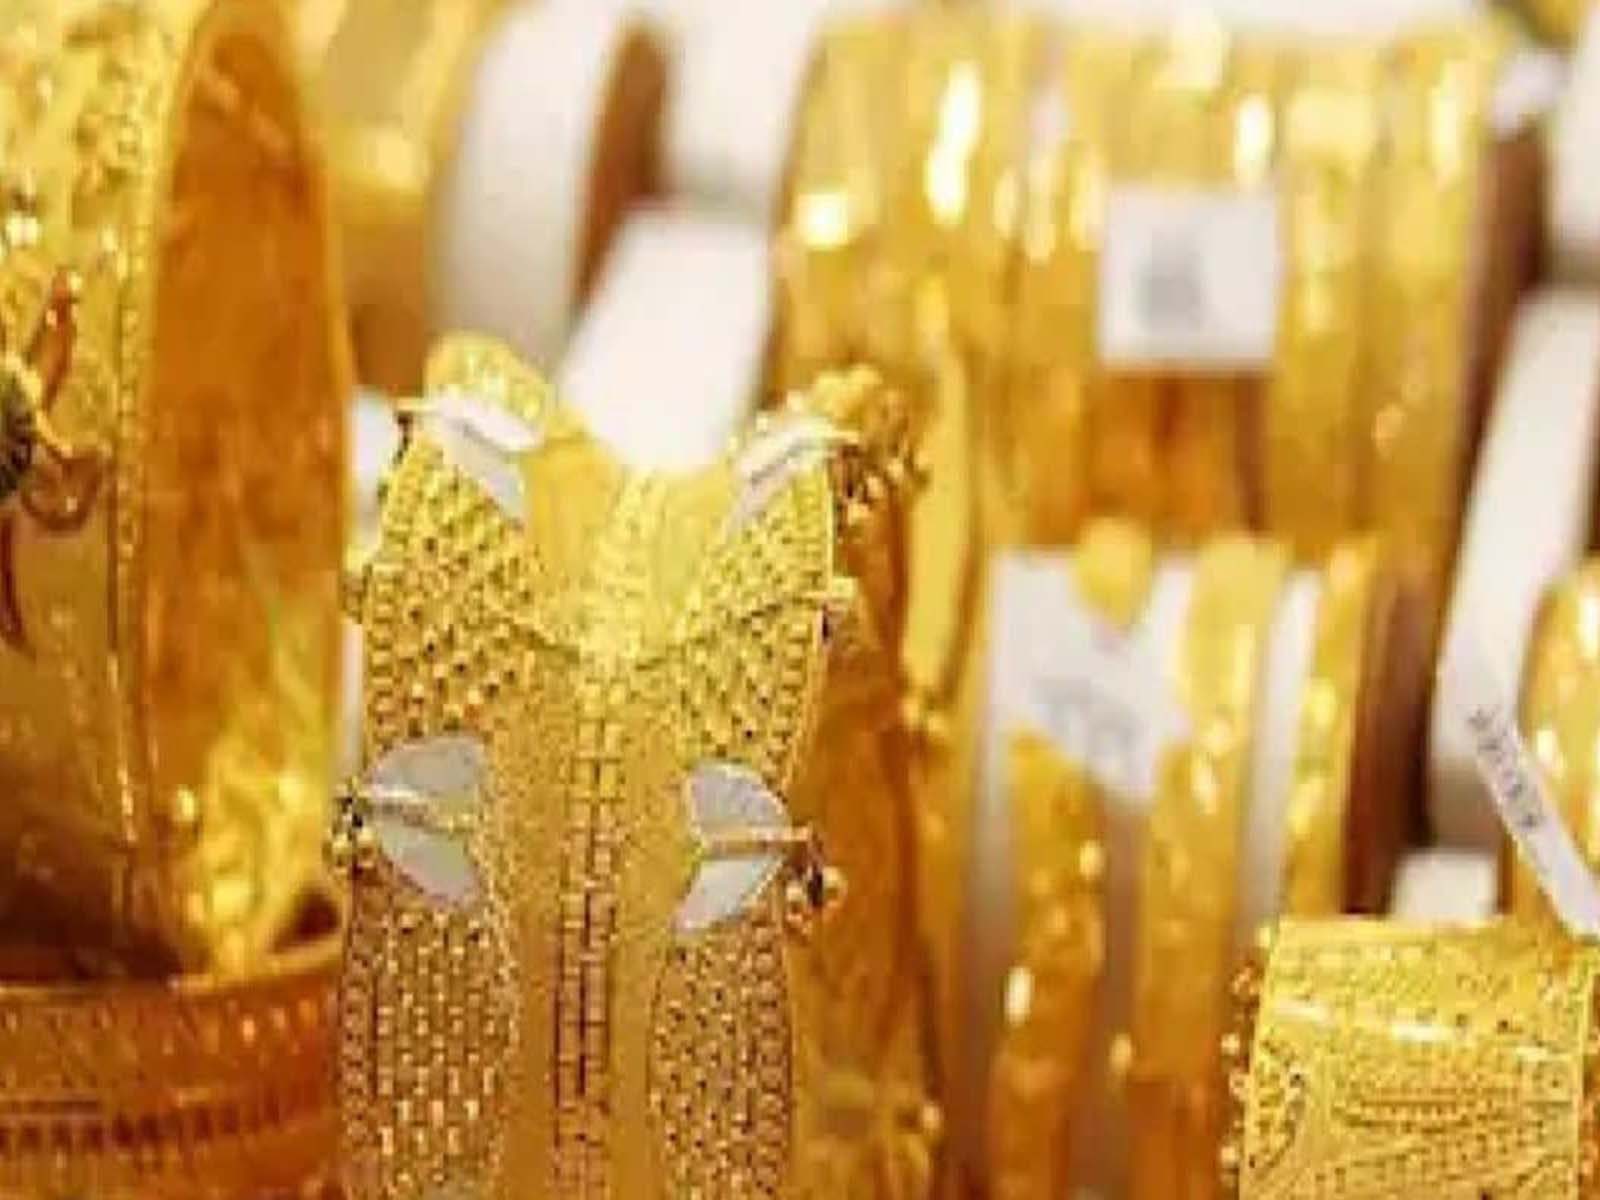 Gold Price Today : ਸੋਨੇ-ਚਾਂਦੀ ਦੀਆਂ ਕੀਮਤਾਂ 'ਚ ਹੋਰ ਗਿਰਾਵਟ, ਦੇਖੋ ਕੀ ਚੱਲ ਰਿਹਾ 10 ਗ੍ਰਾਮ ਸੋਨੇ ਦਾ ਰੇਟ